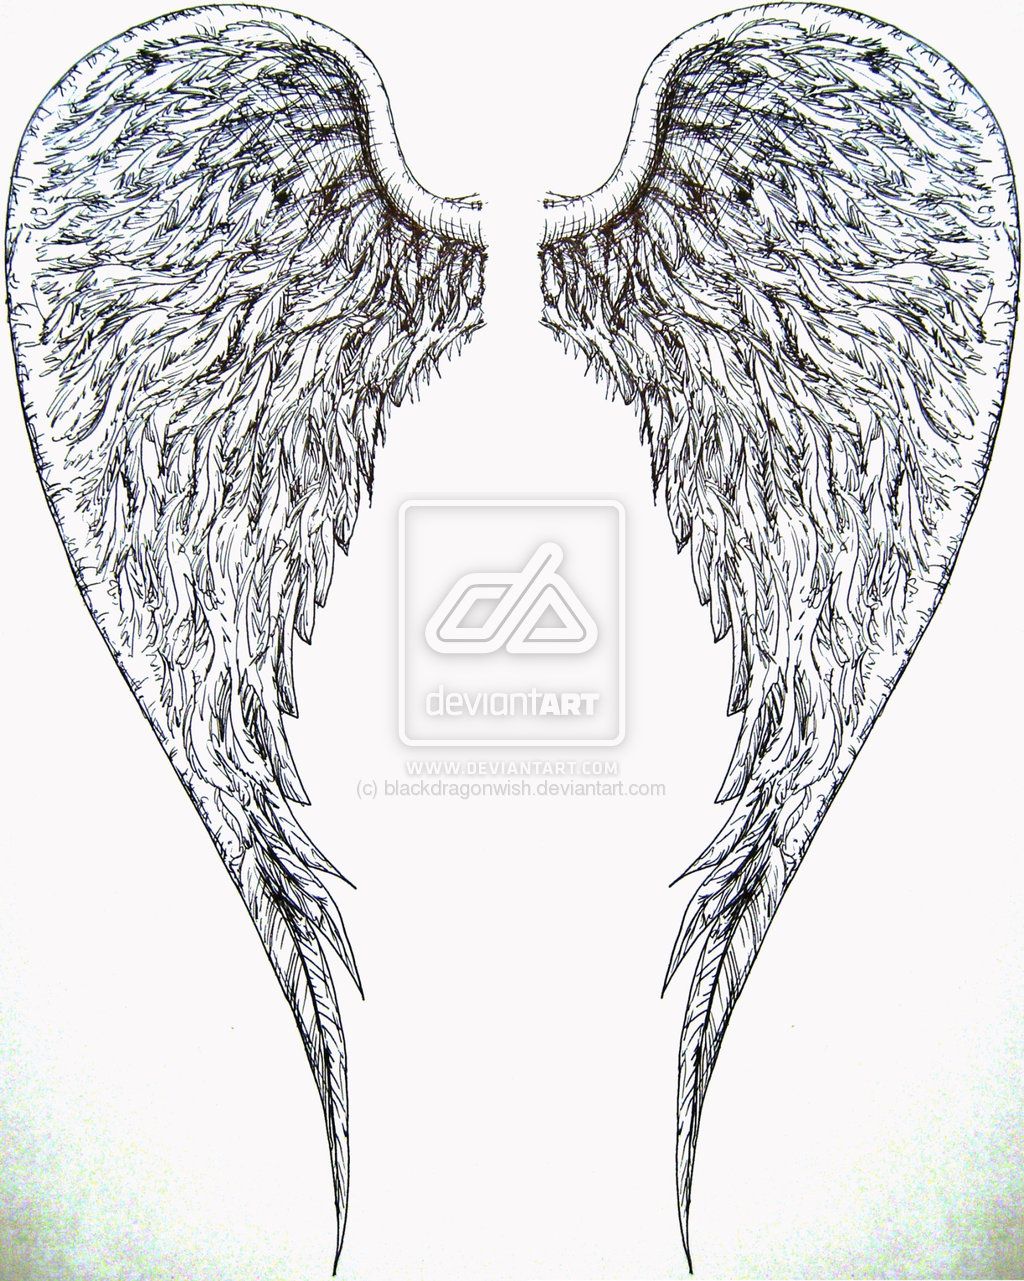 wing tattoos – Bing Images